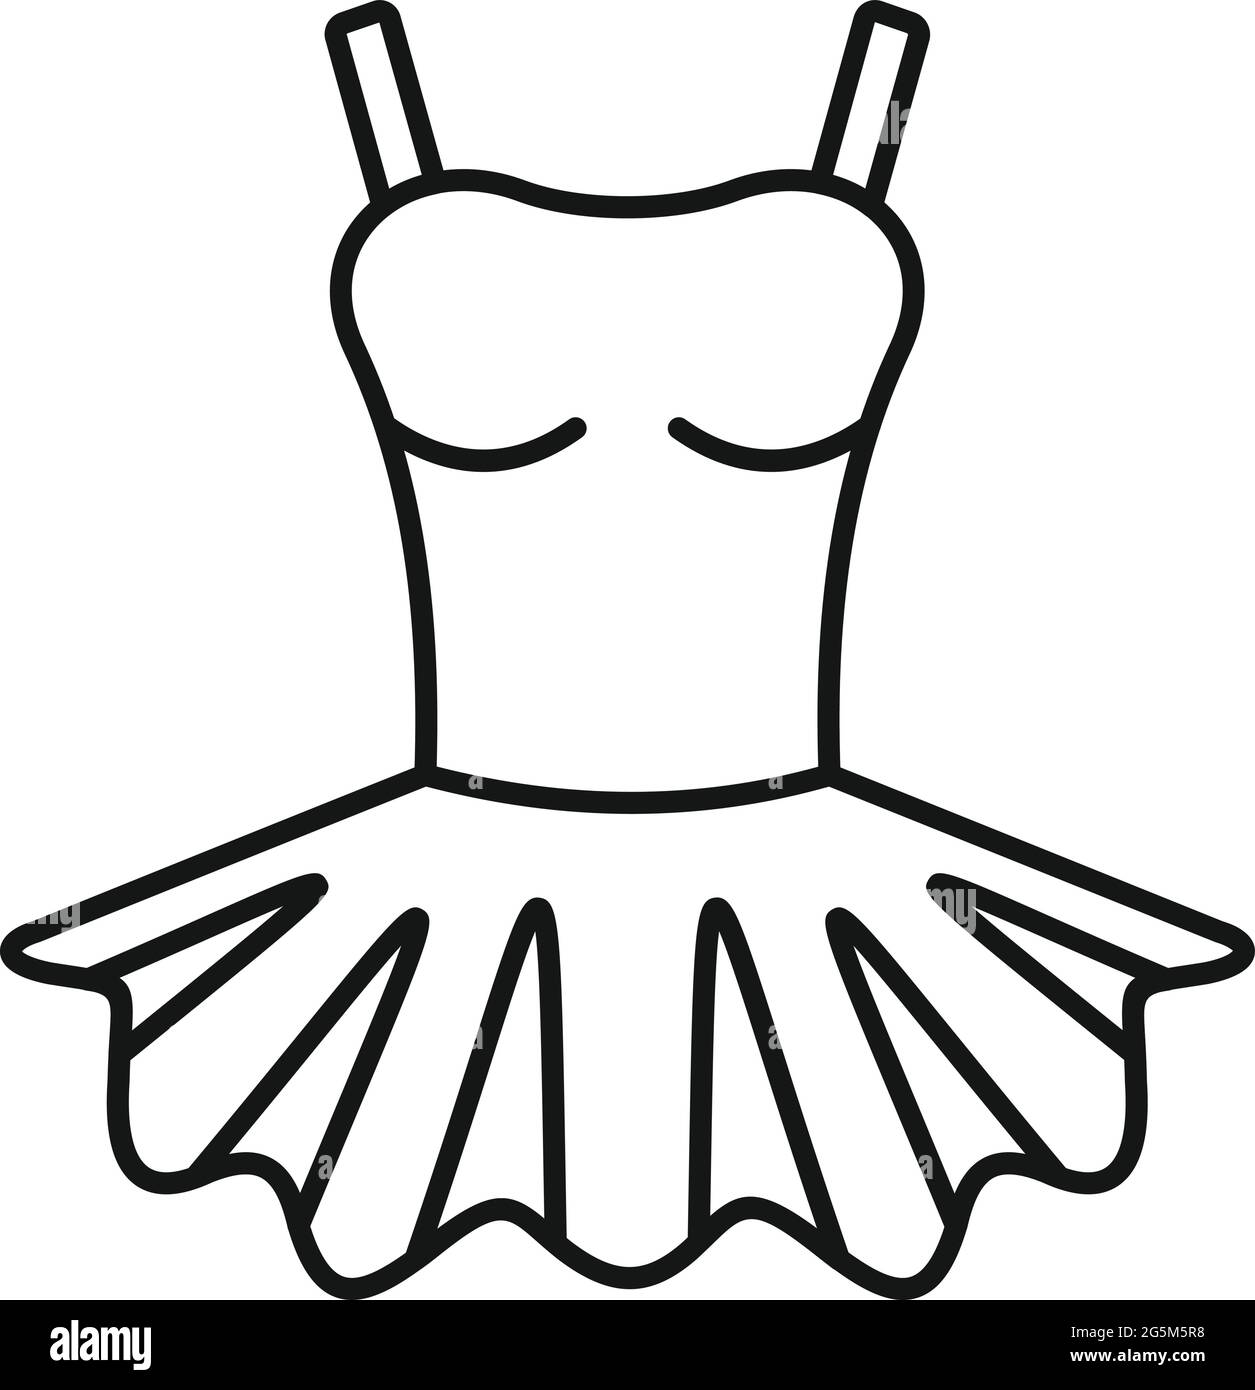 Ballerina clothes icon outline vector. Ballet baby Stock Vector Image & Art  - Alamy